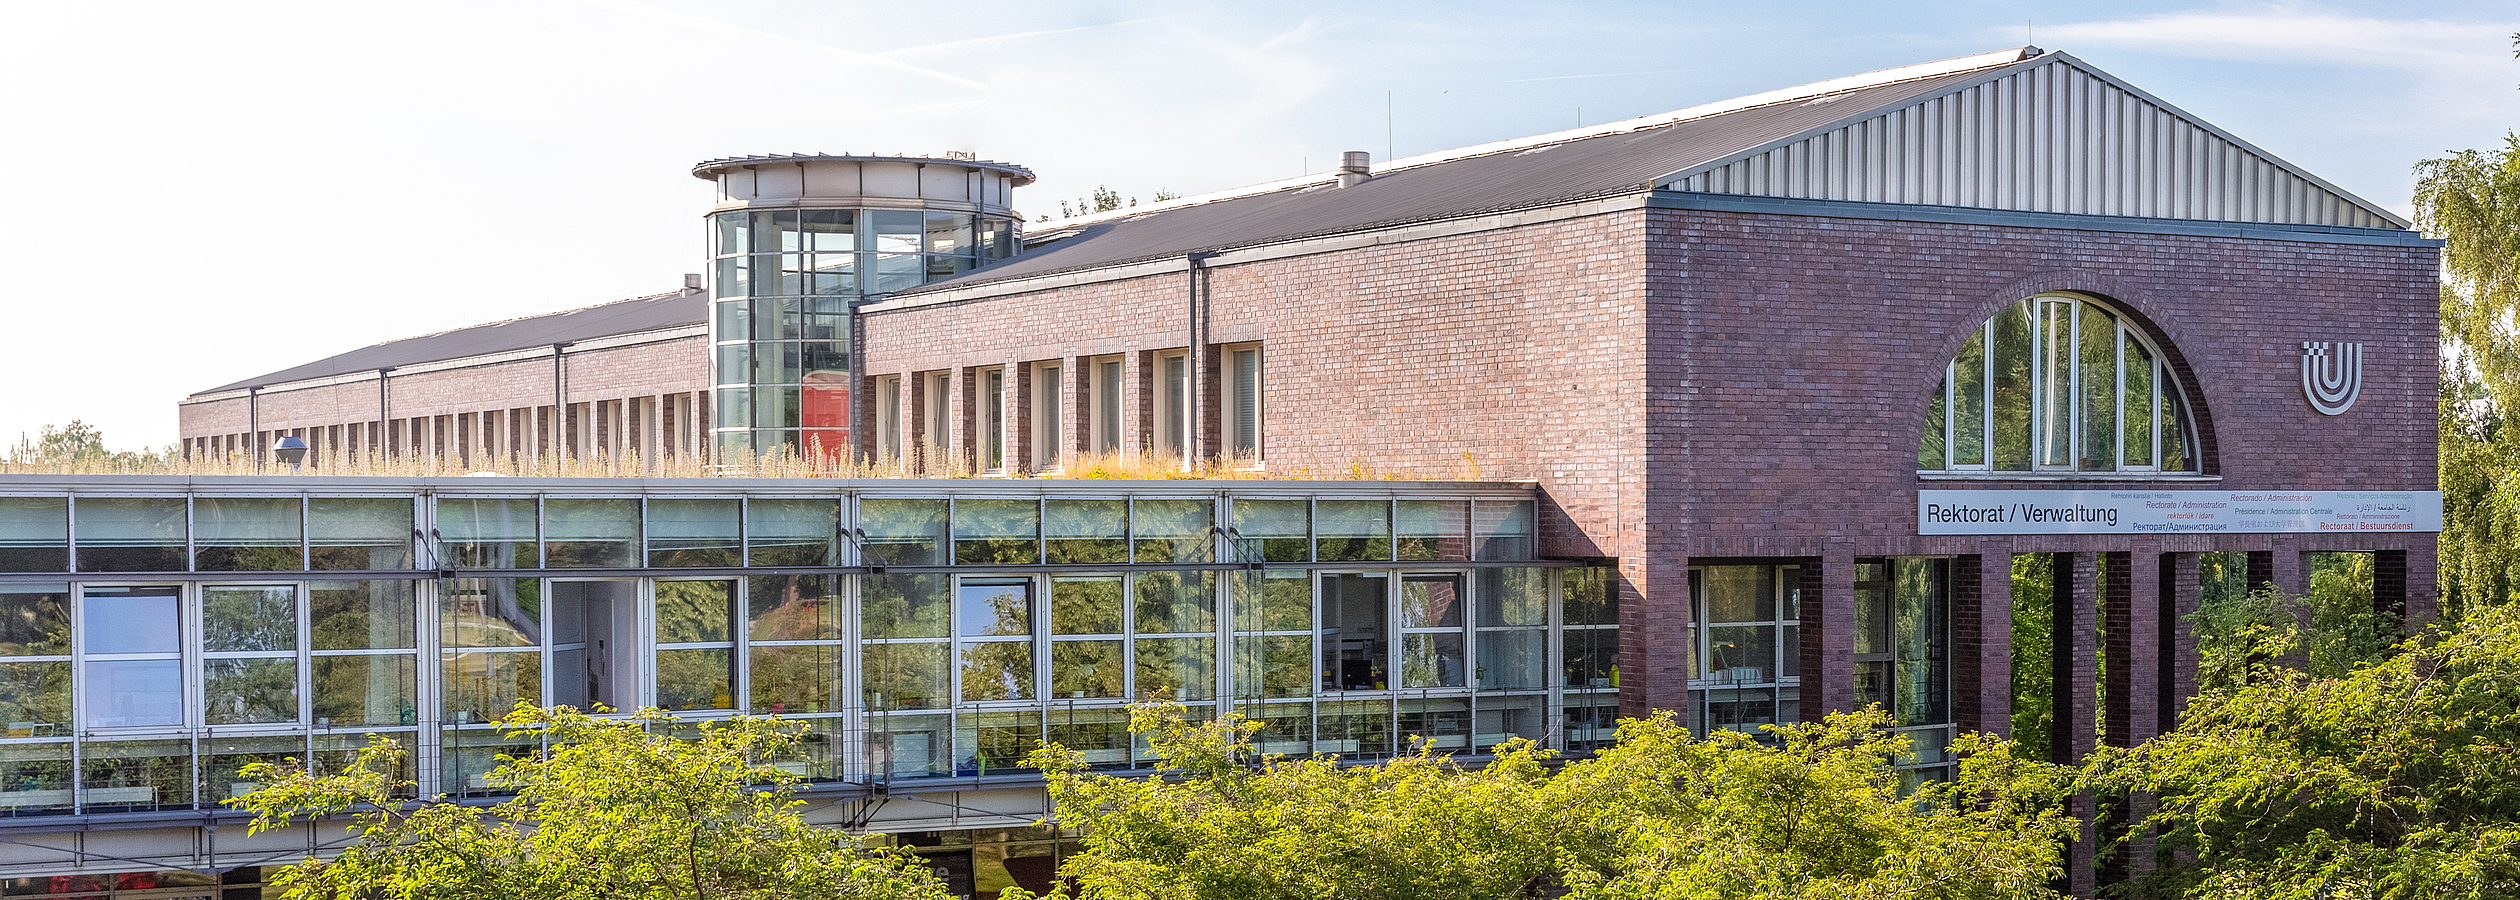 Außenansicht des Verwaltungsgebäudes der Universität Bremen